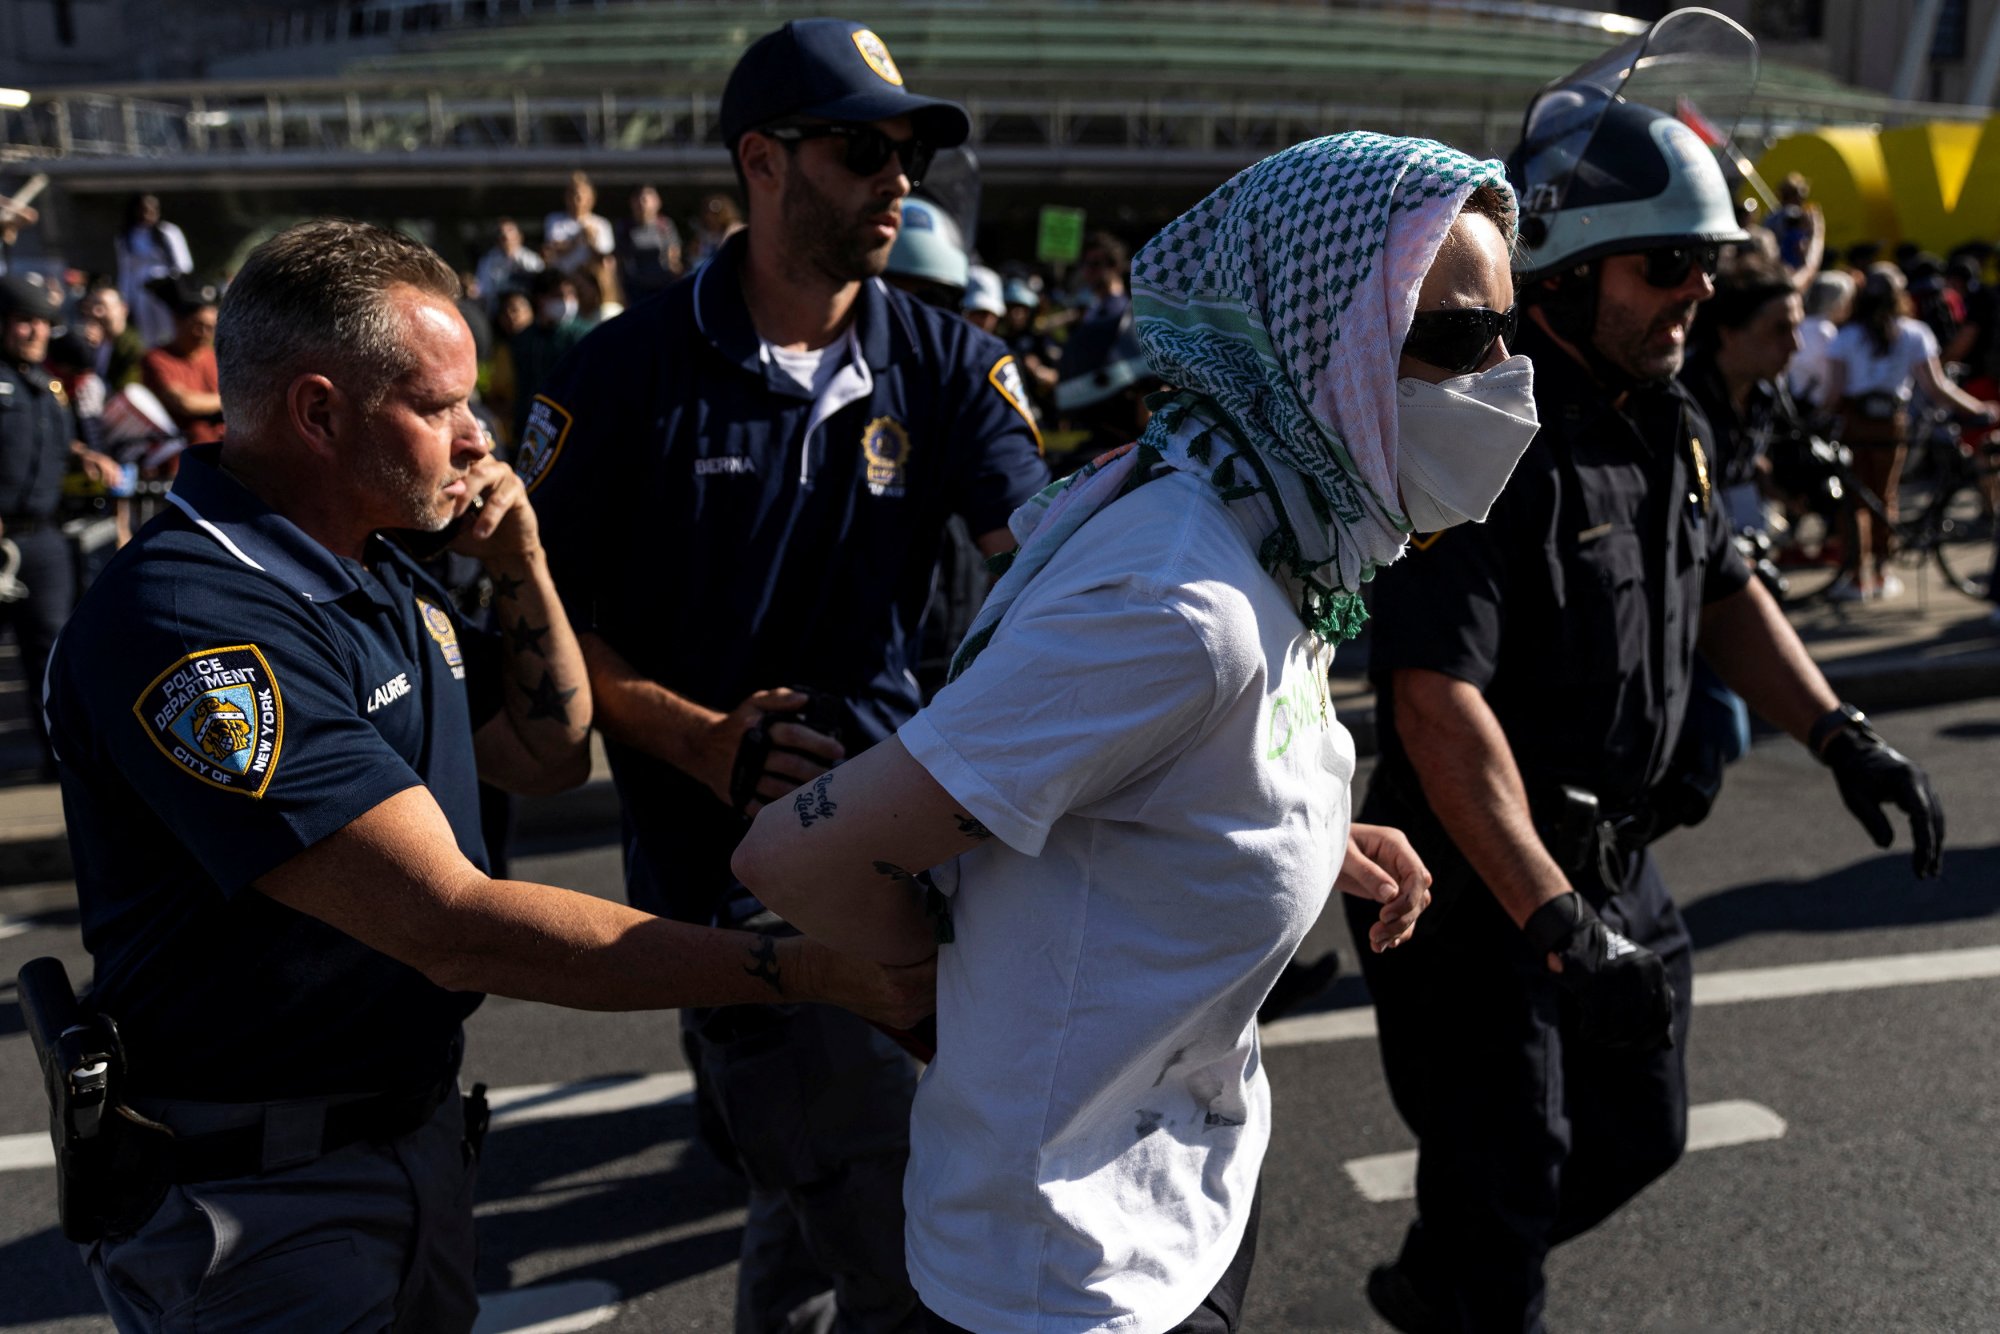 ΗΠΑ: Διαδηλωτές υπέρ της Παλαιστίνης εισέβαλαν σε μουσείο της Νέας Υόρκης - 22 συλλήψεις από την Αστυνομία